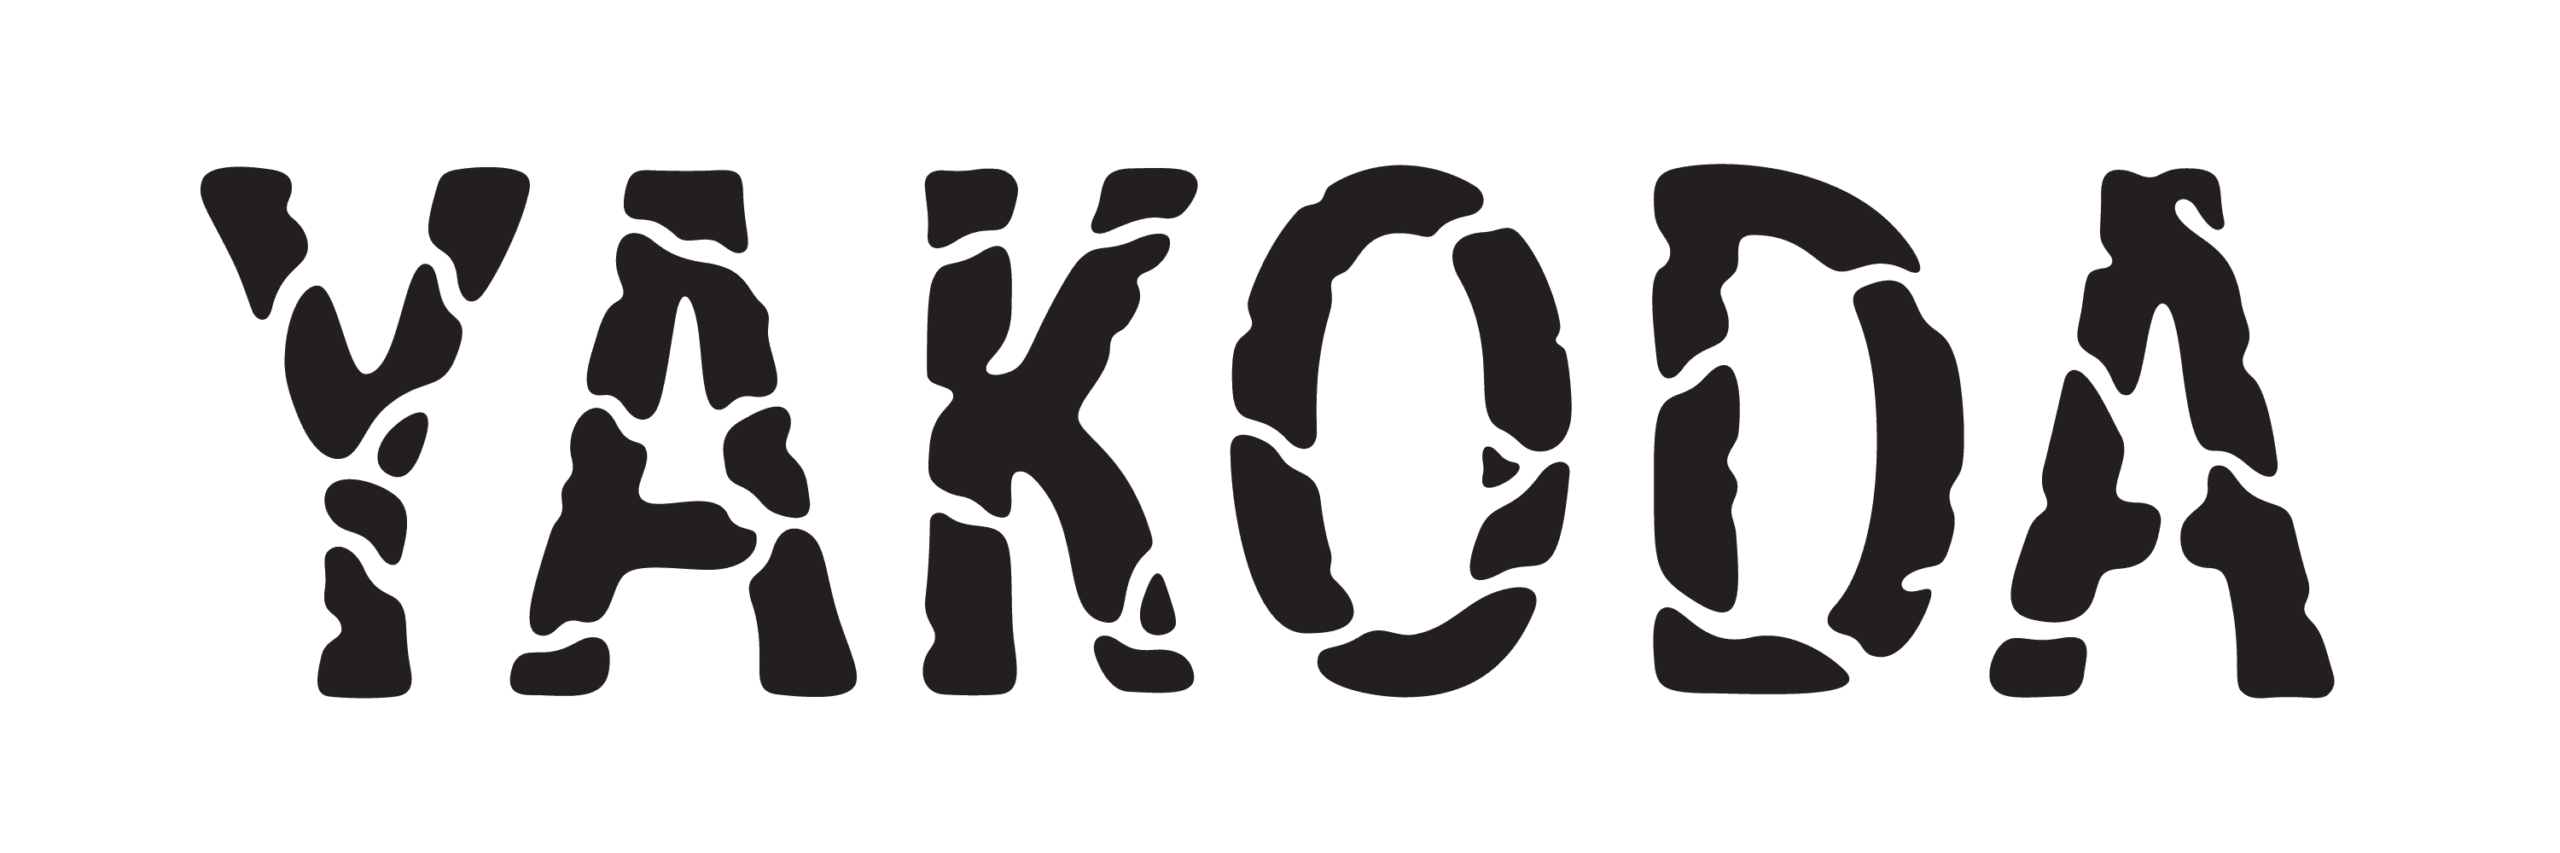 animated typography spelling "yakoda"